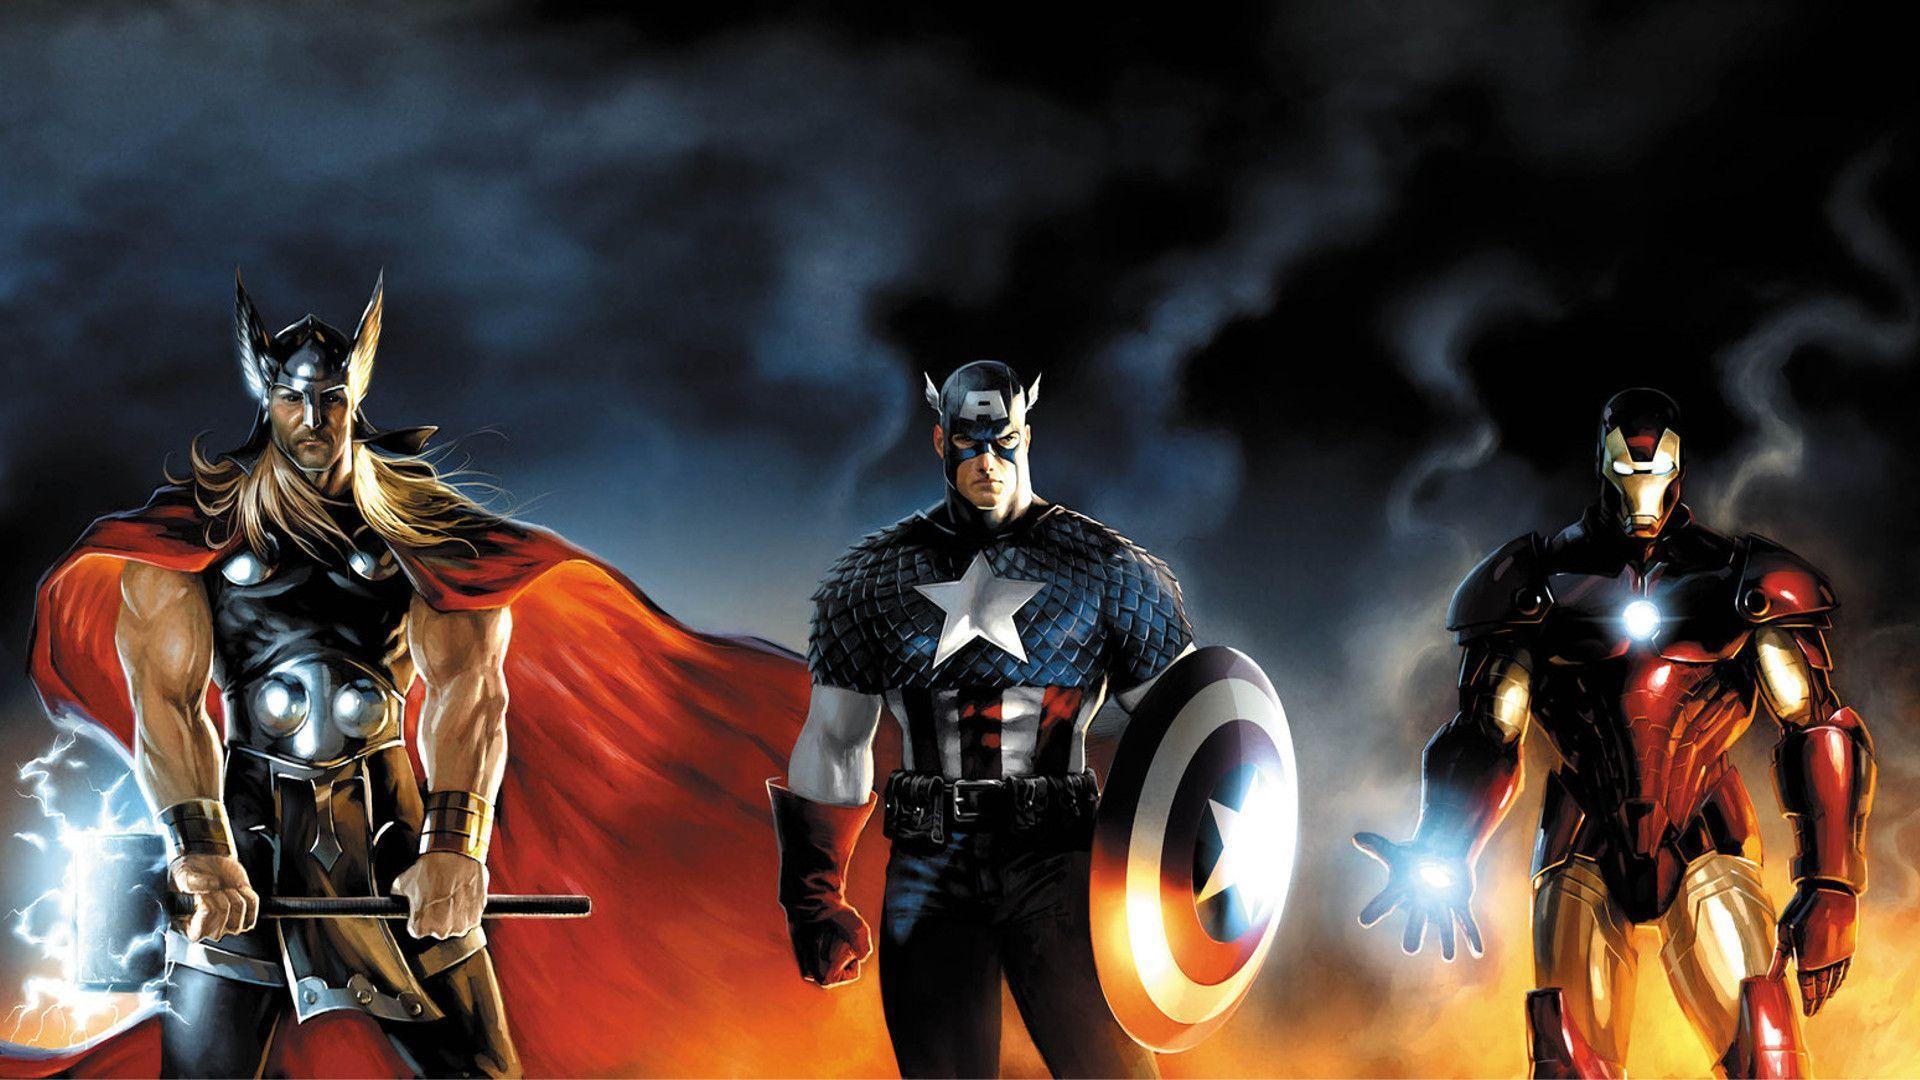 Marvel Avengers HD Wallpaper. Download HD Wallpaper, High